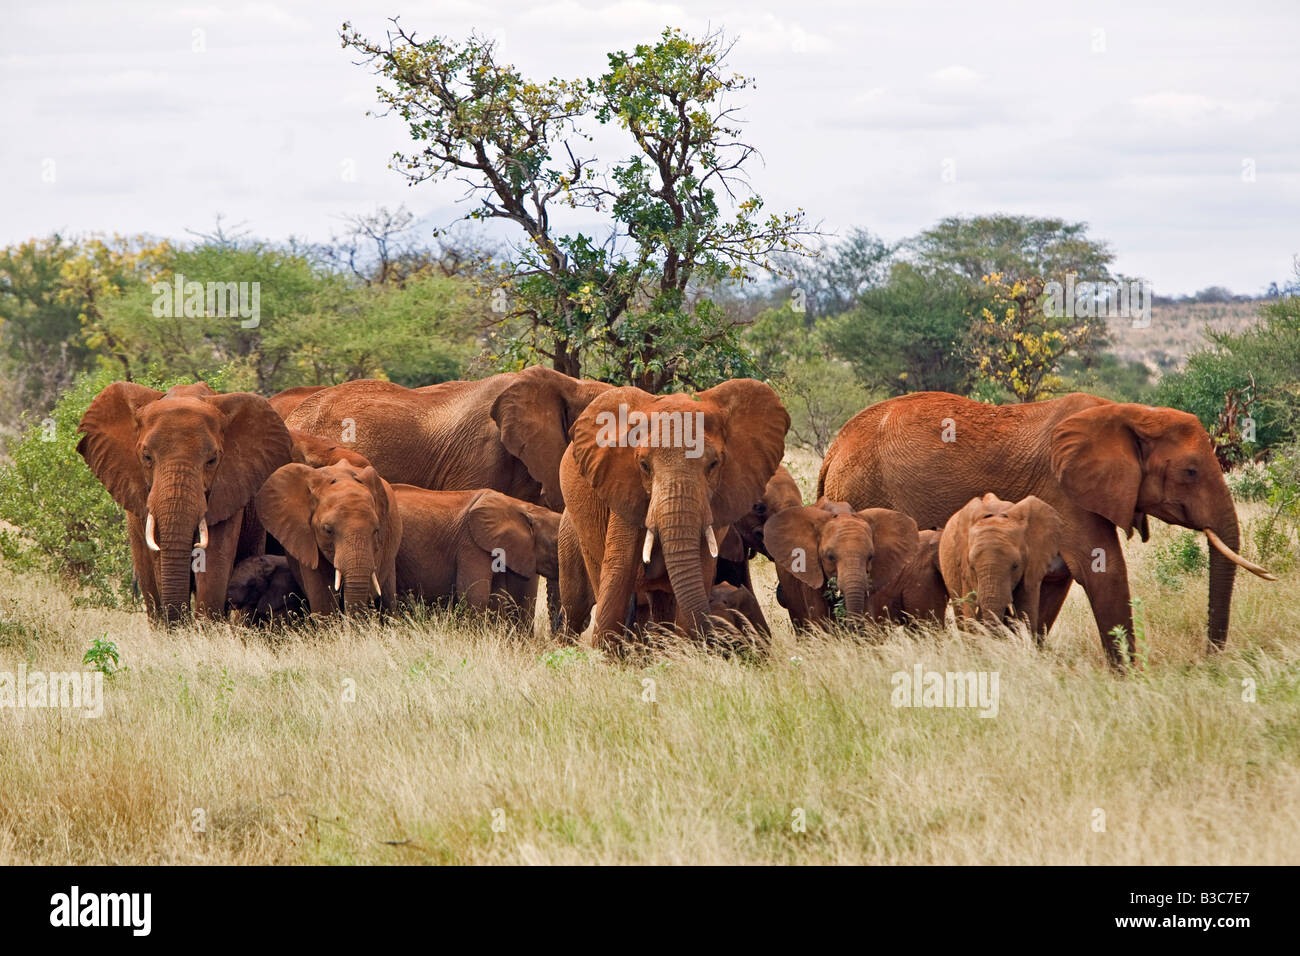 Kenya, Tsavo West National Park. Una manada de elefantes (Loxodonta africana) en el Parque Nacional de Tsavo West. El color rojo de su piel gruesa es el resultado de ellos mismos desempolvando con el suelo rojo característico de la zona. Foto de stock